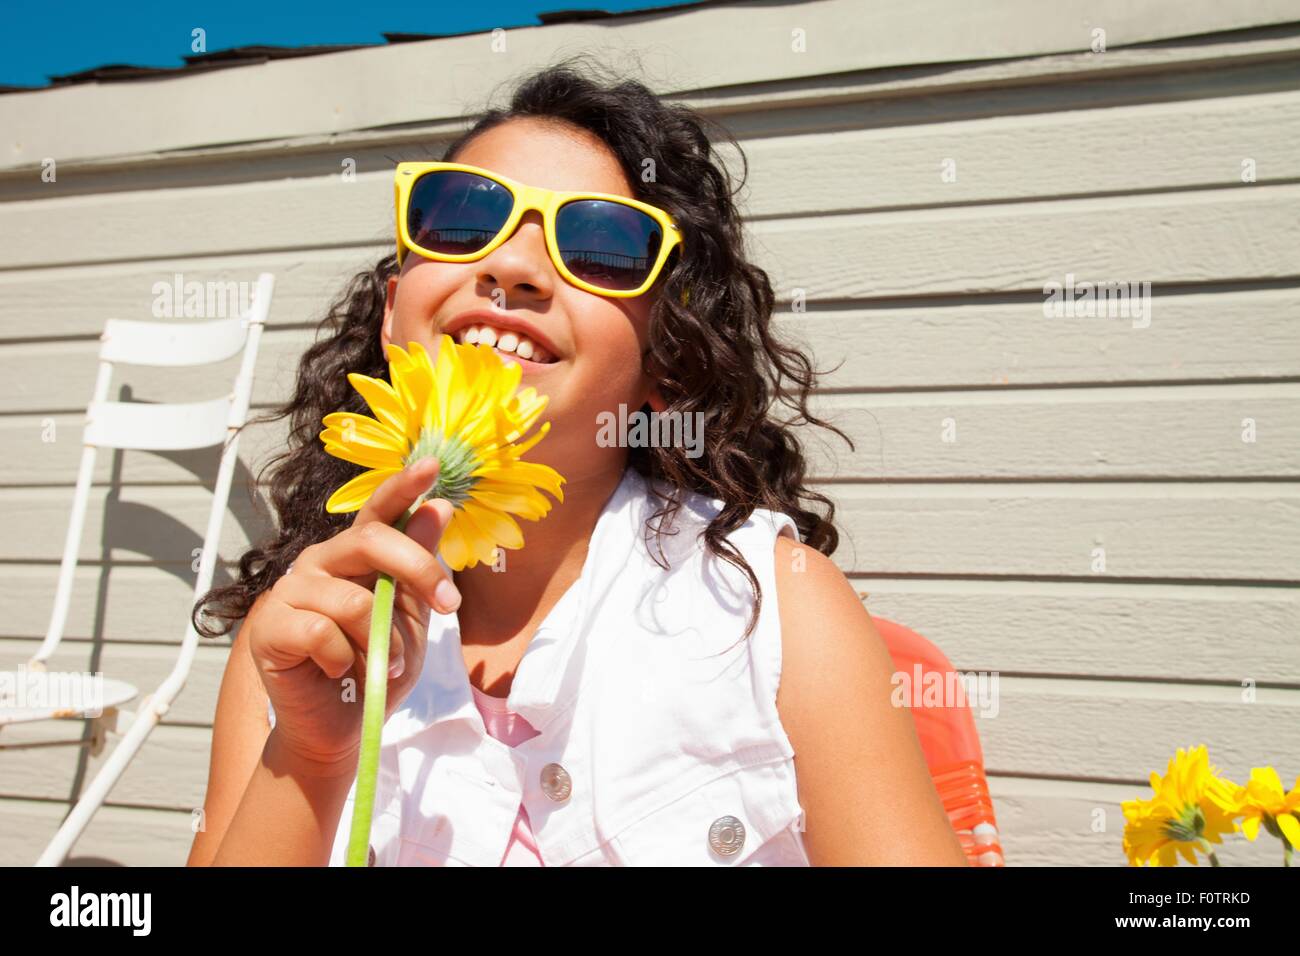 Portrait de jeune fille portant des lunettes de soleil jaune tournesol  holding on patio Photo Stock - Alamy